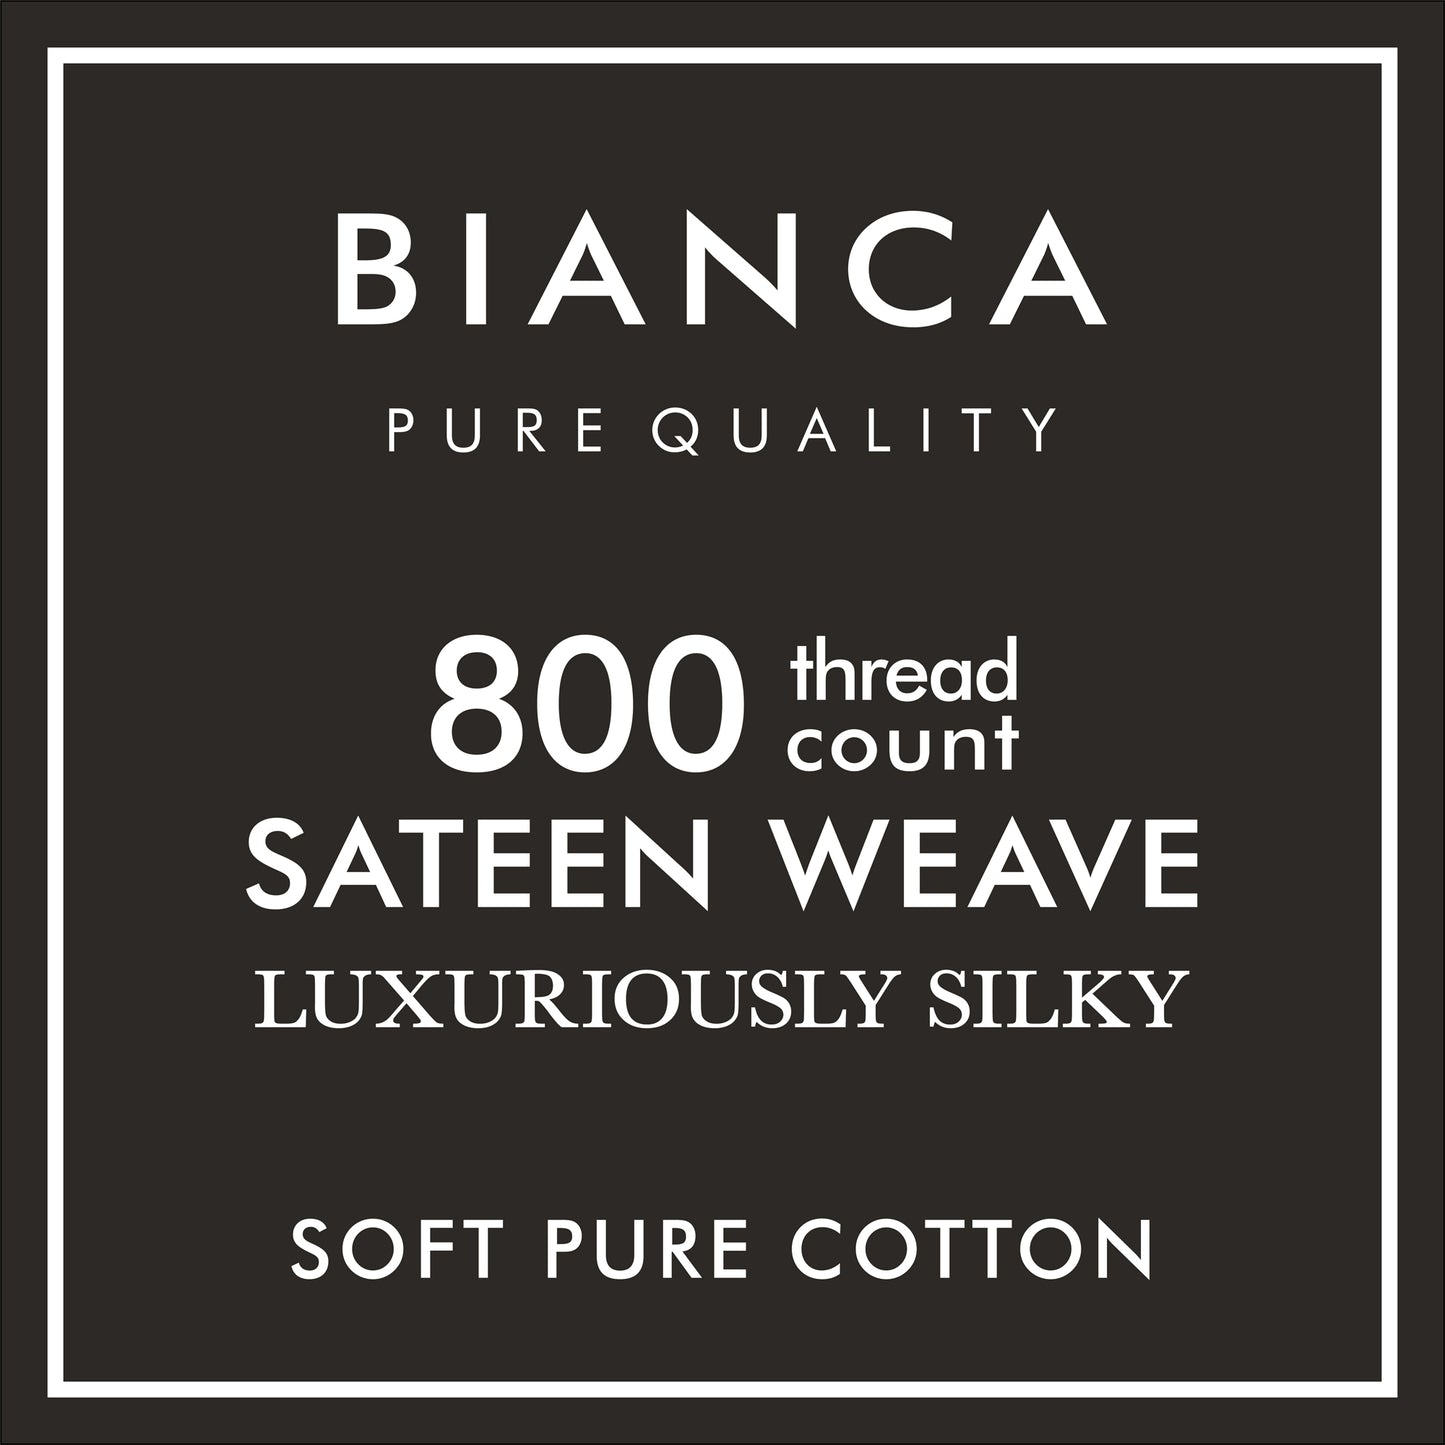 Bianca White 800TC Cotton Sateen Oxford Pillowcase